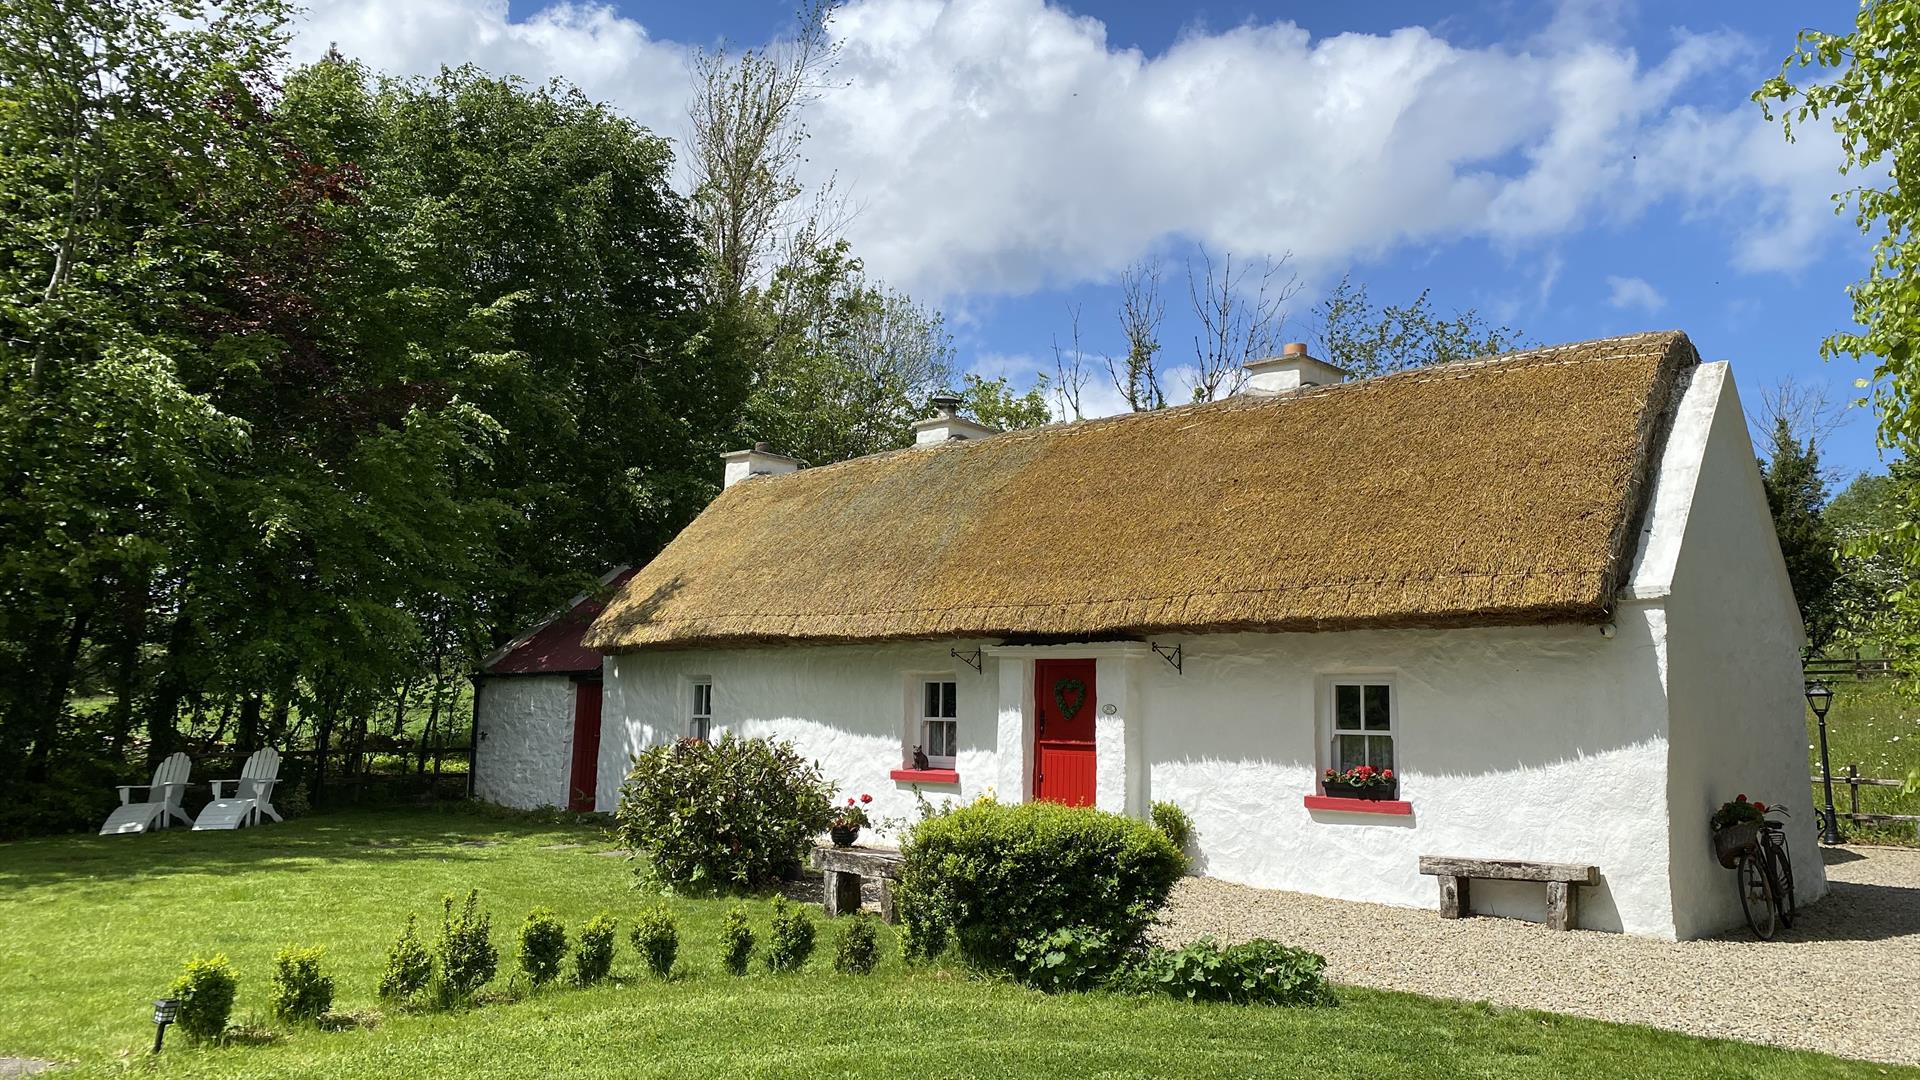 Keenaghan Cottage